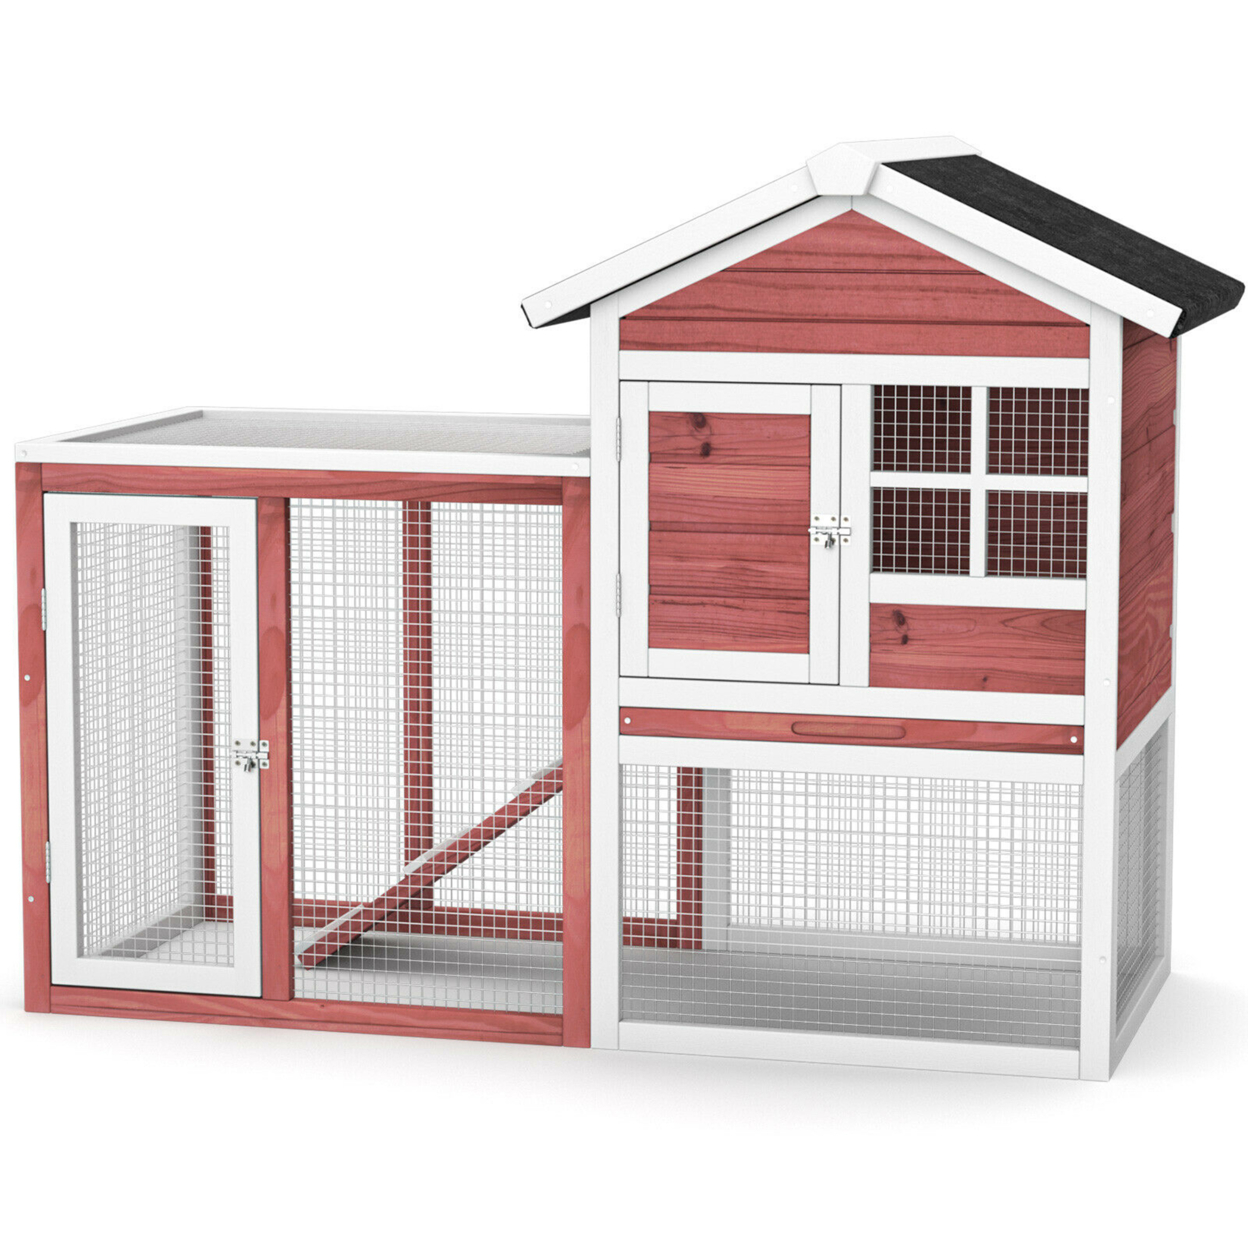 Wooden Chicken Coop Outdoor & Indoor Small Rabbit Hutch W/ Run - Red